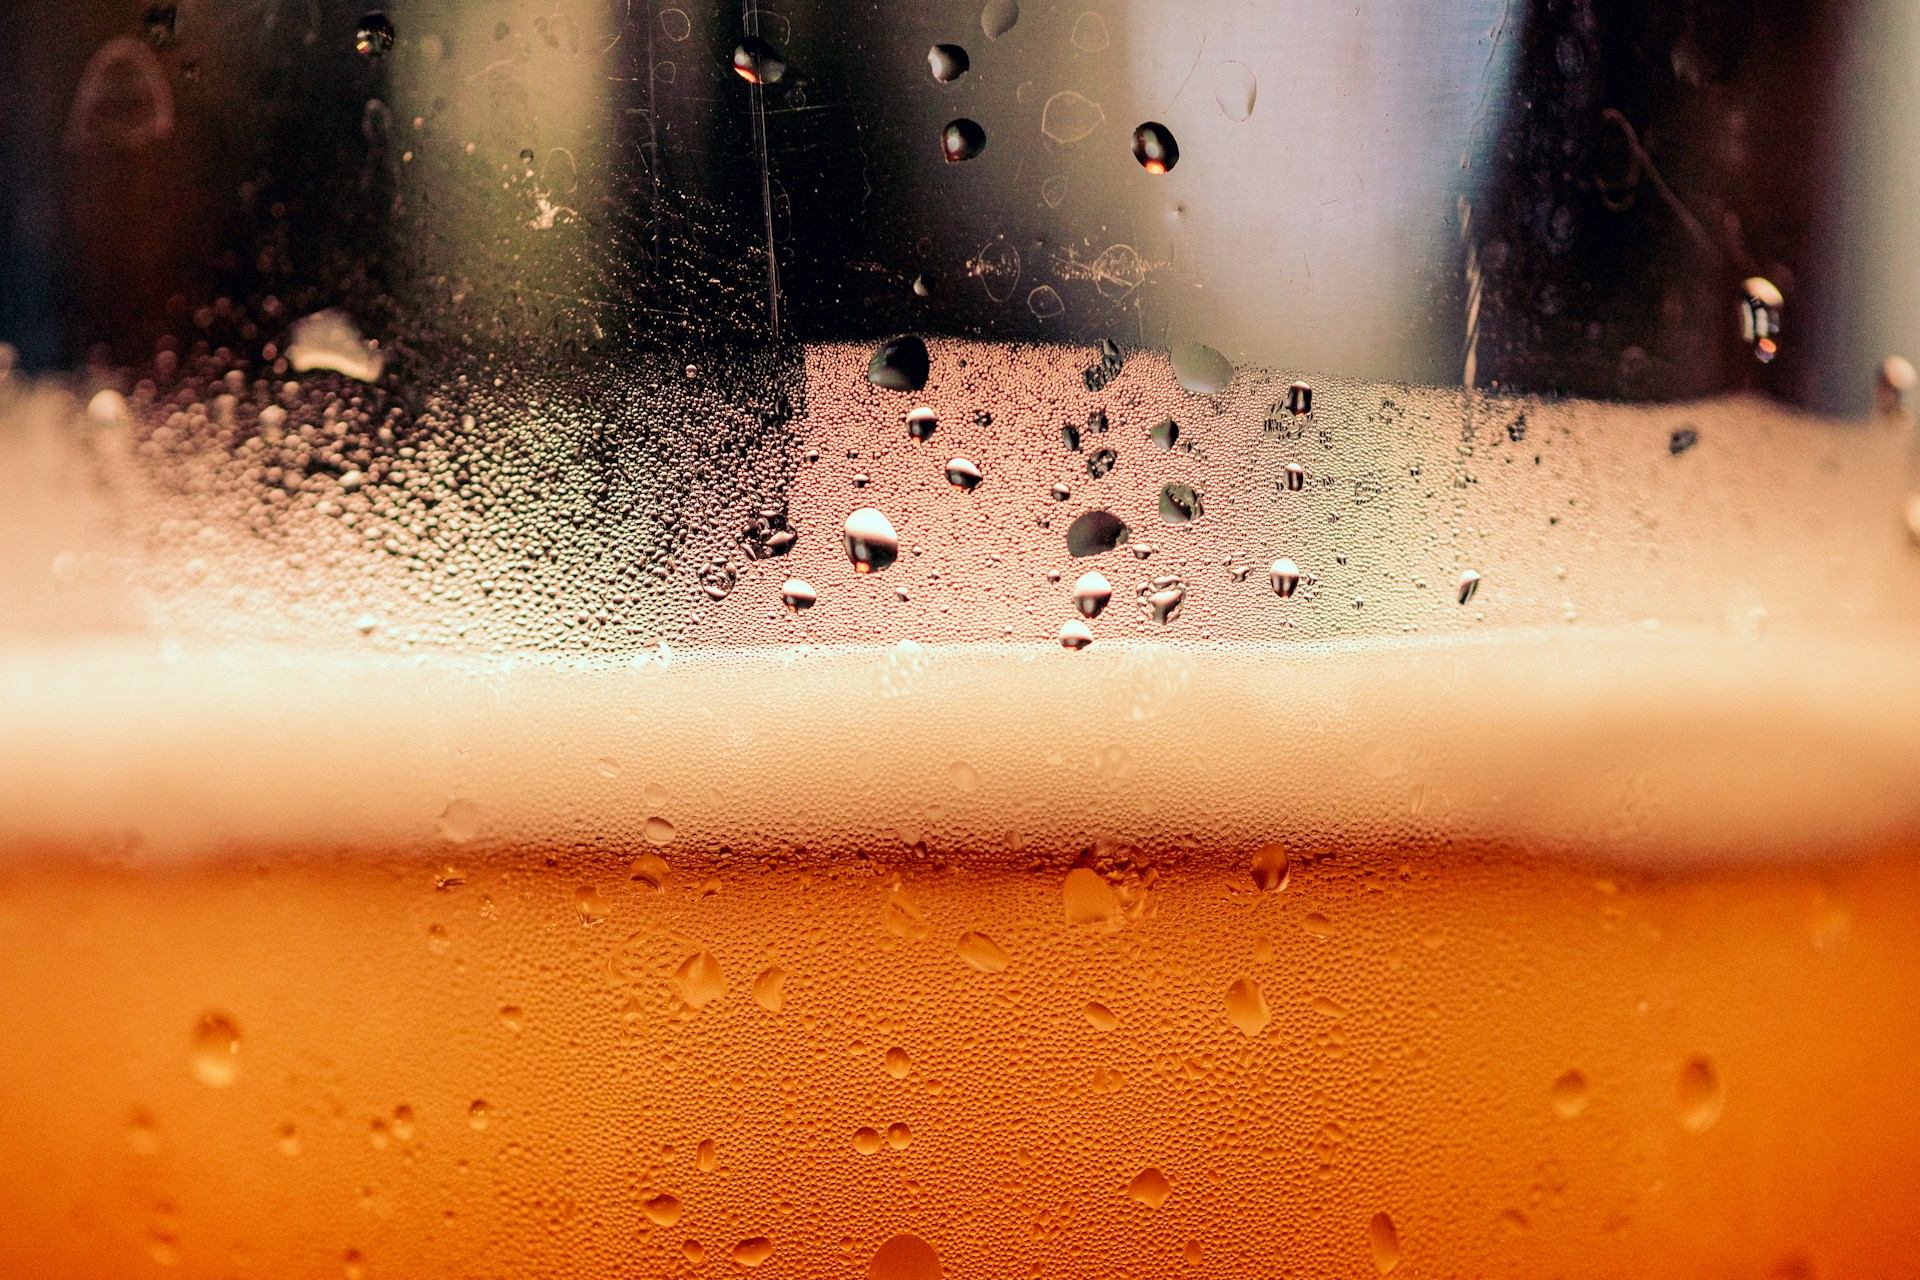 És adequat congelar les copes i gerres de cervesa? T'expliquem els perquès